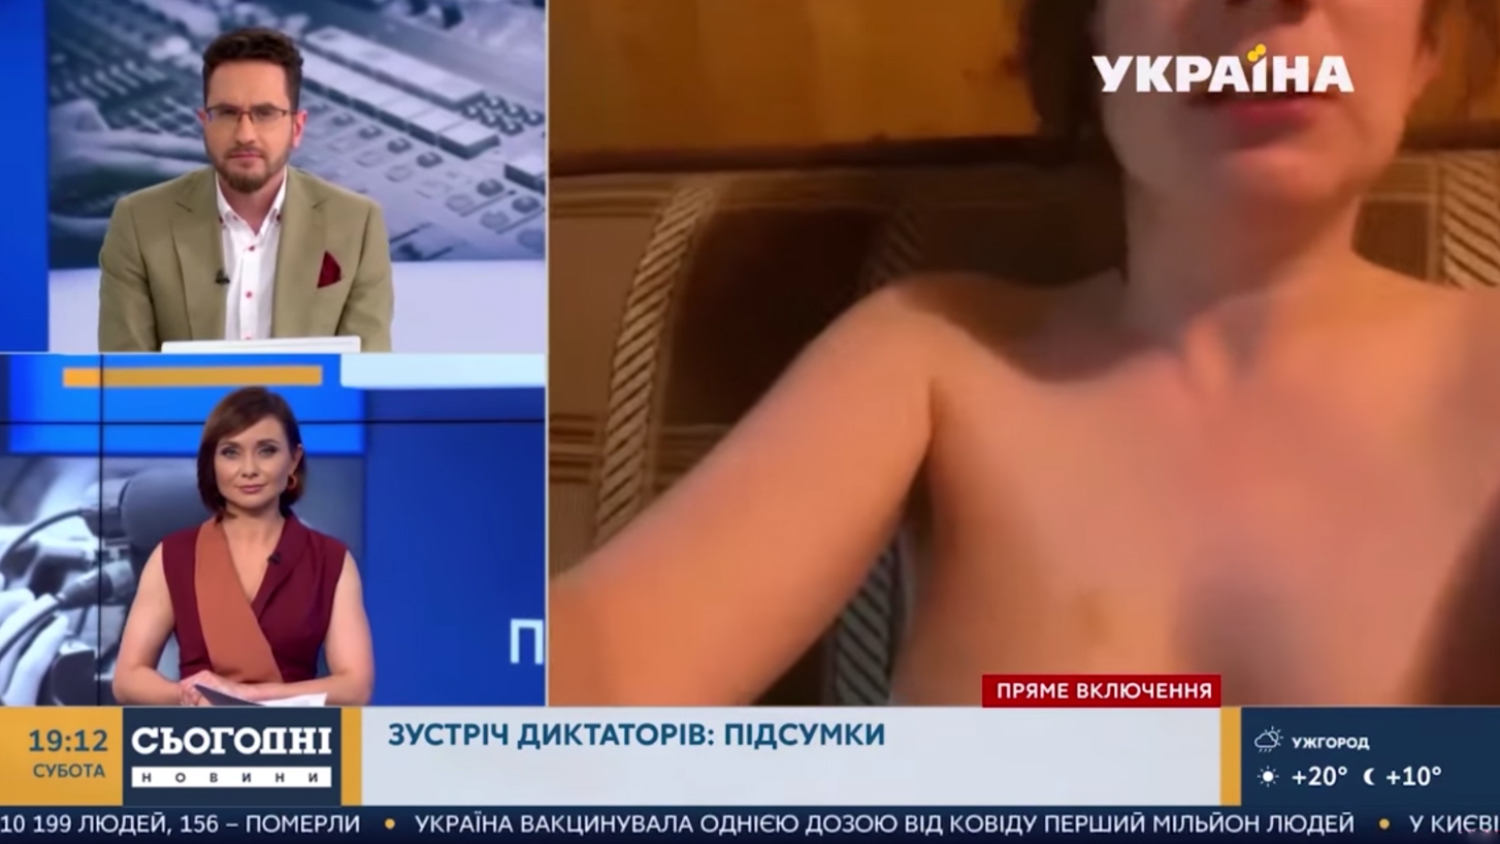 Голая женщина оказалась в прямом эфире украинского телеканала - Газета.Ru |  Новости